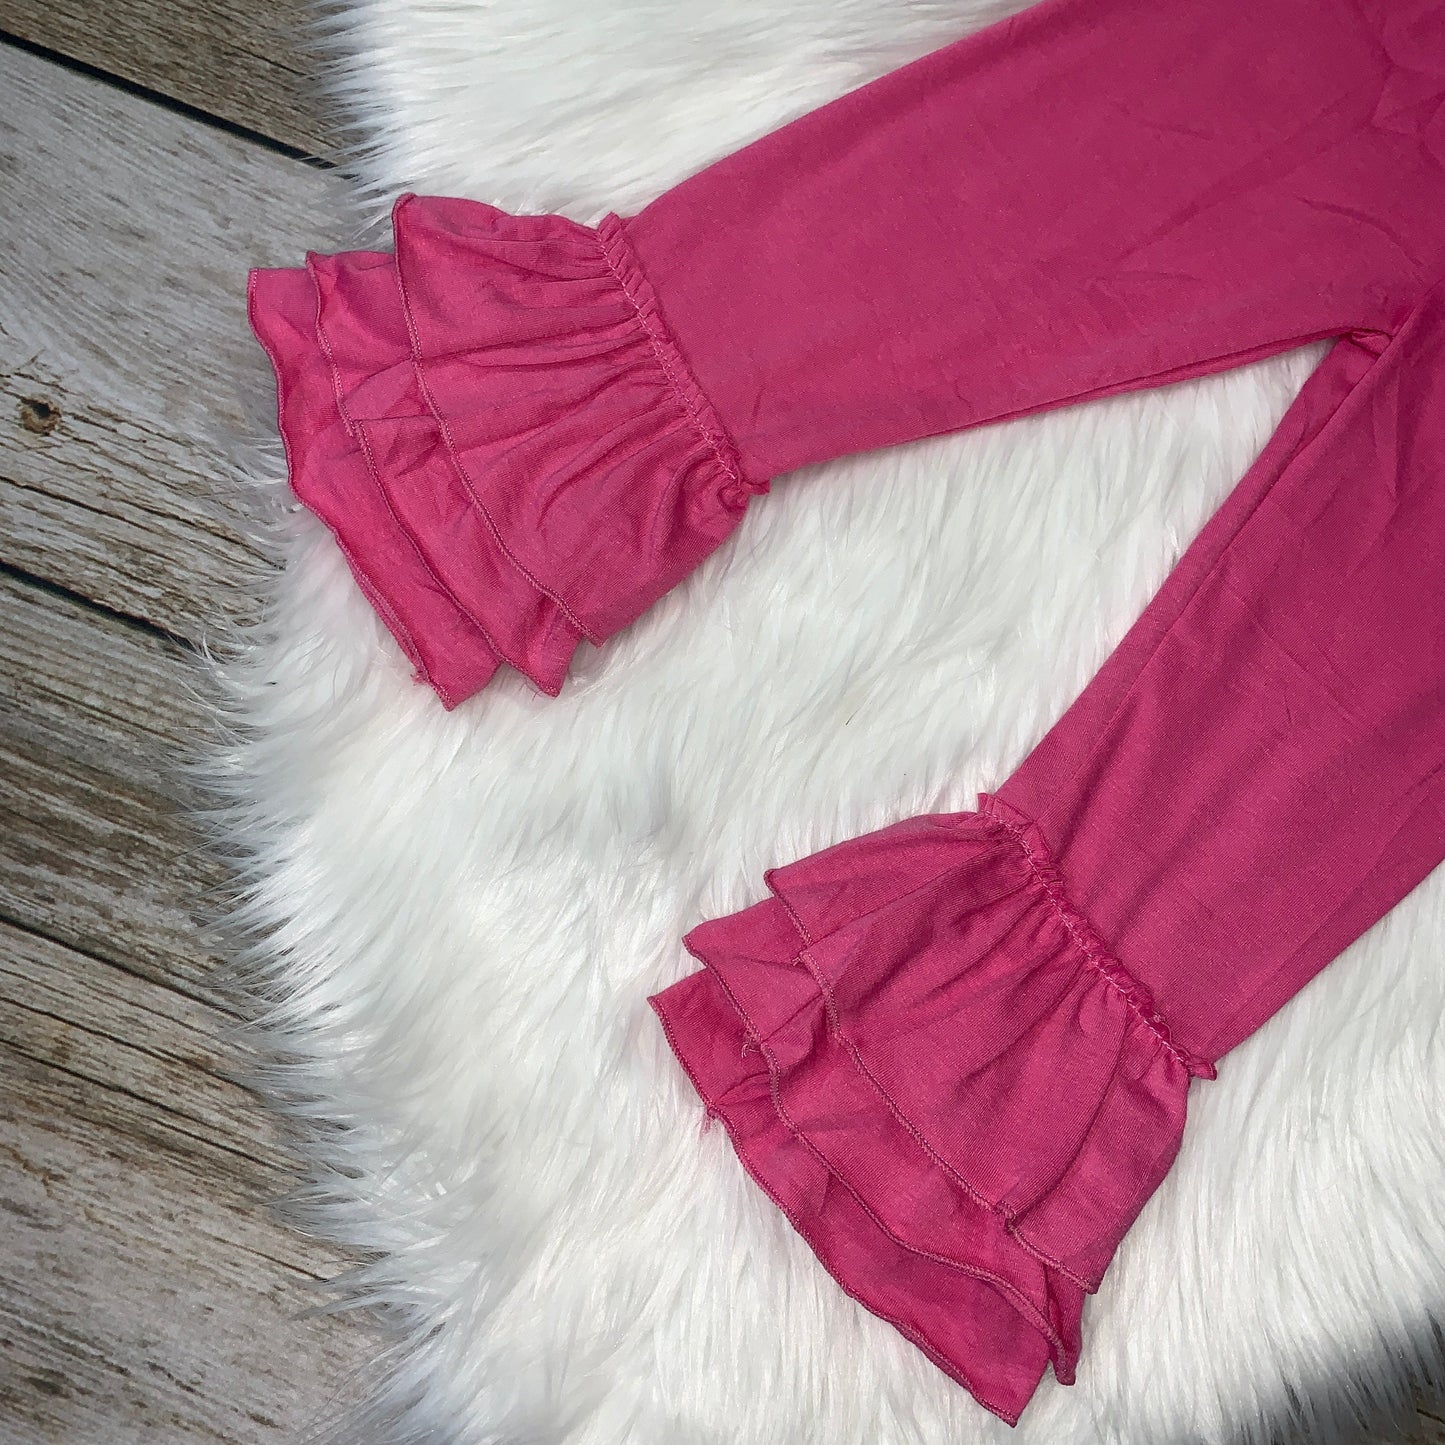 Knit Cotton Truffle Pants - Hot Pink